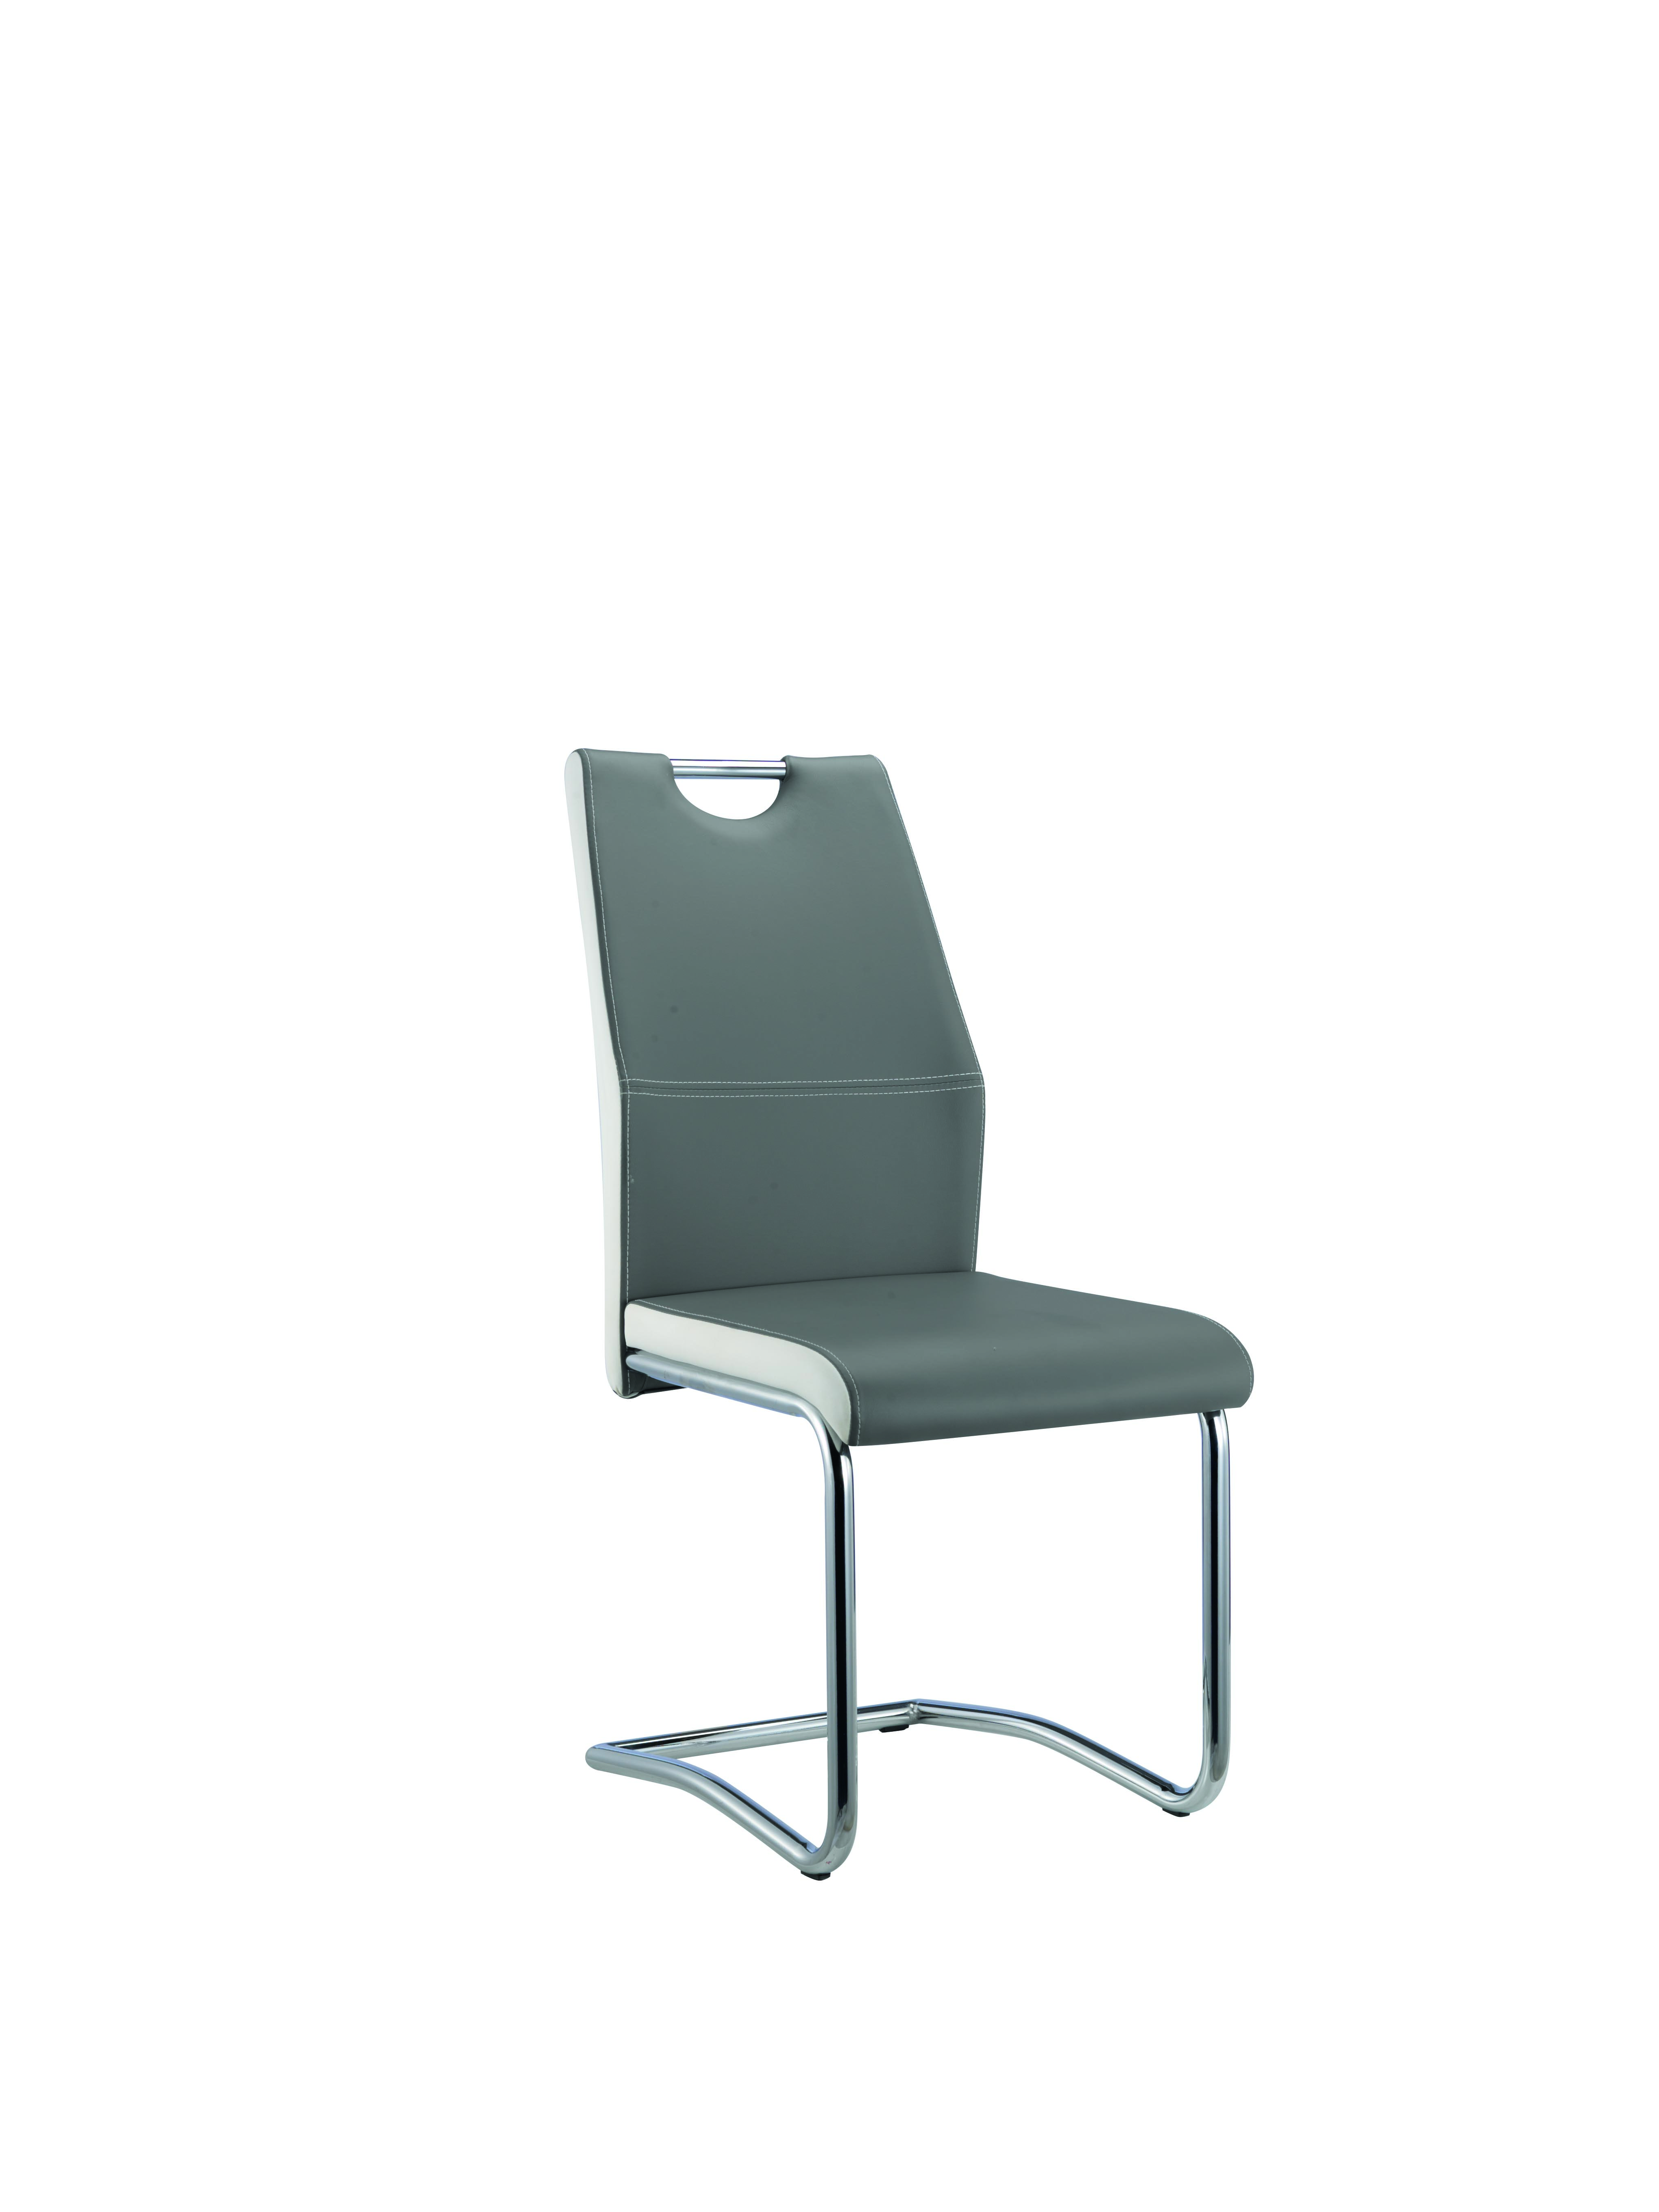 Chair AM-C10